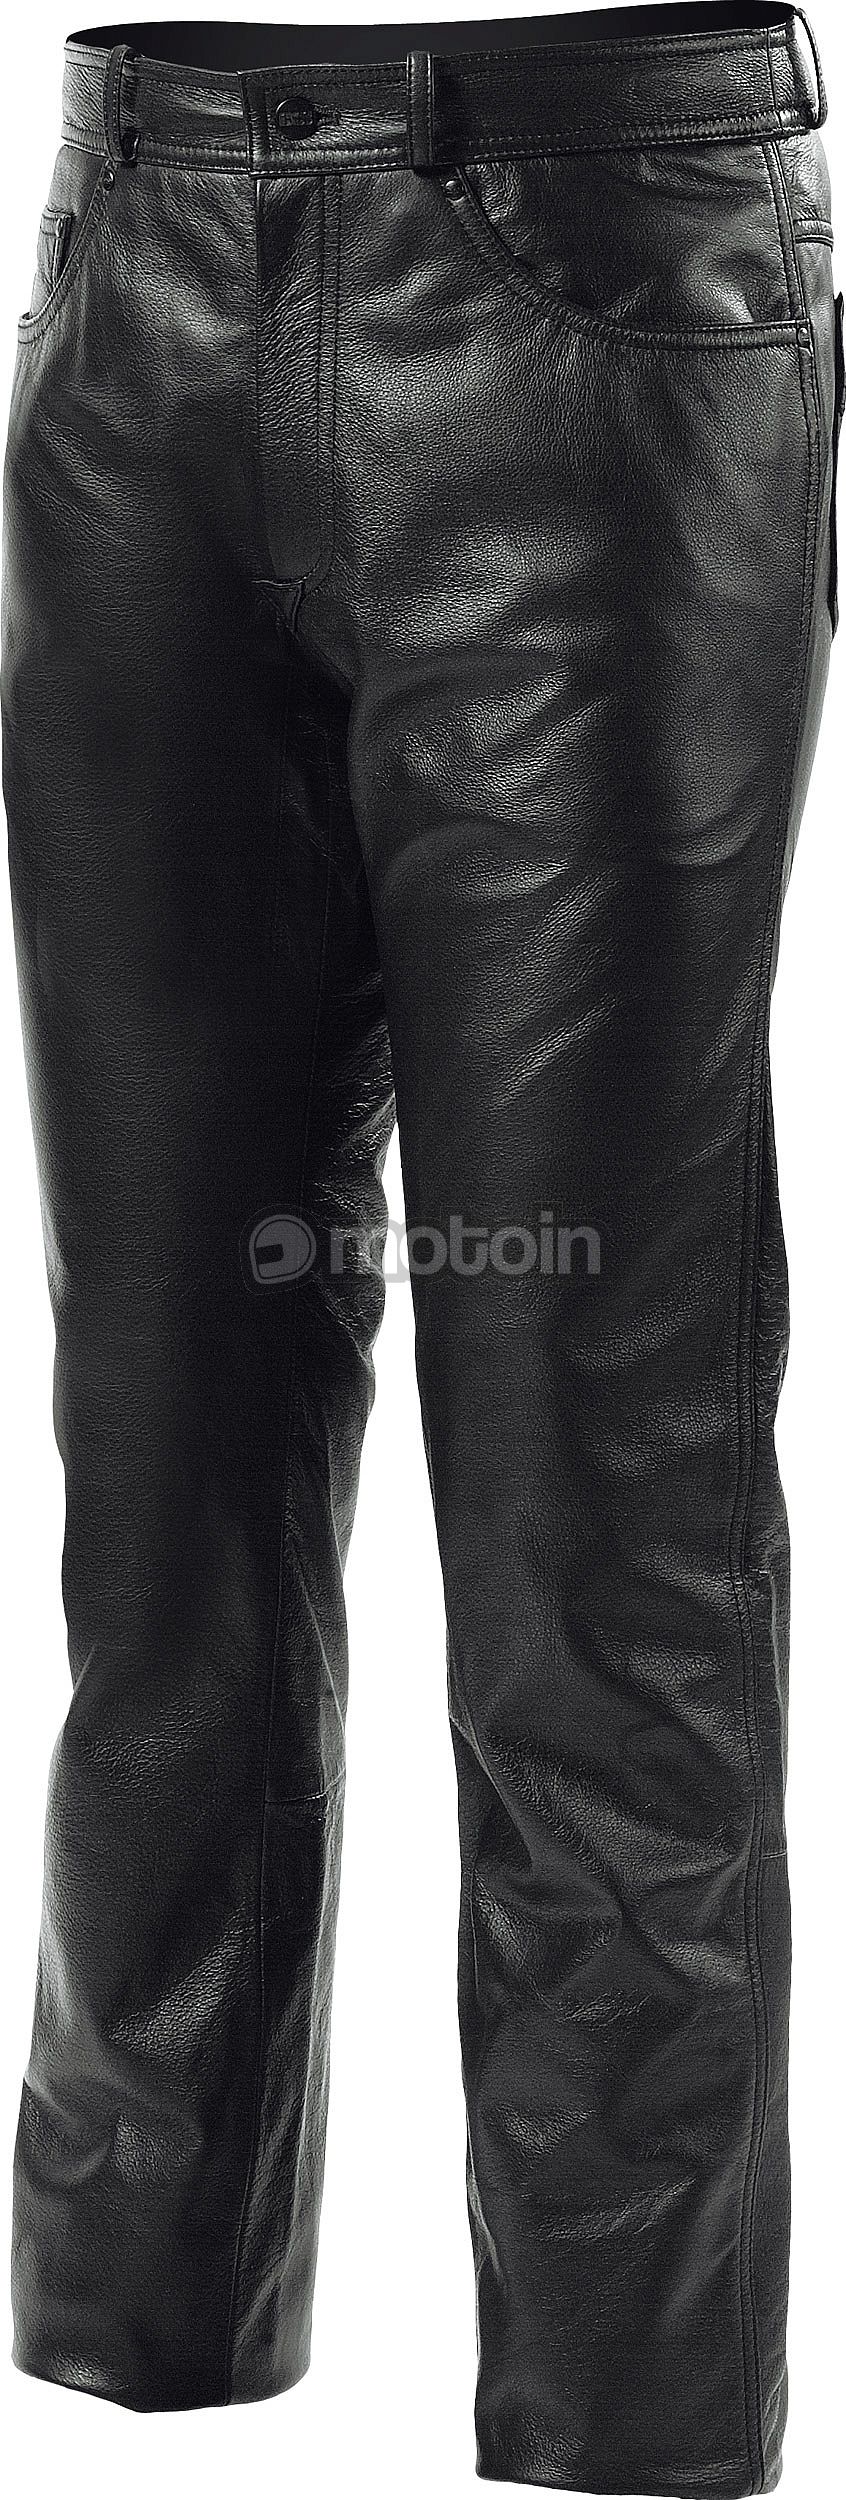 IXS Gaucho III, leather pant women